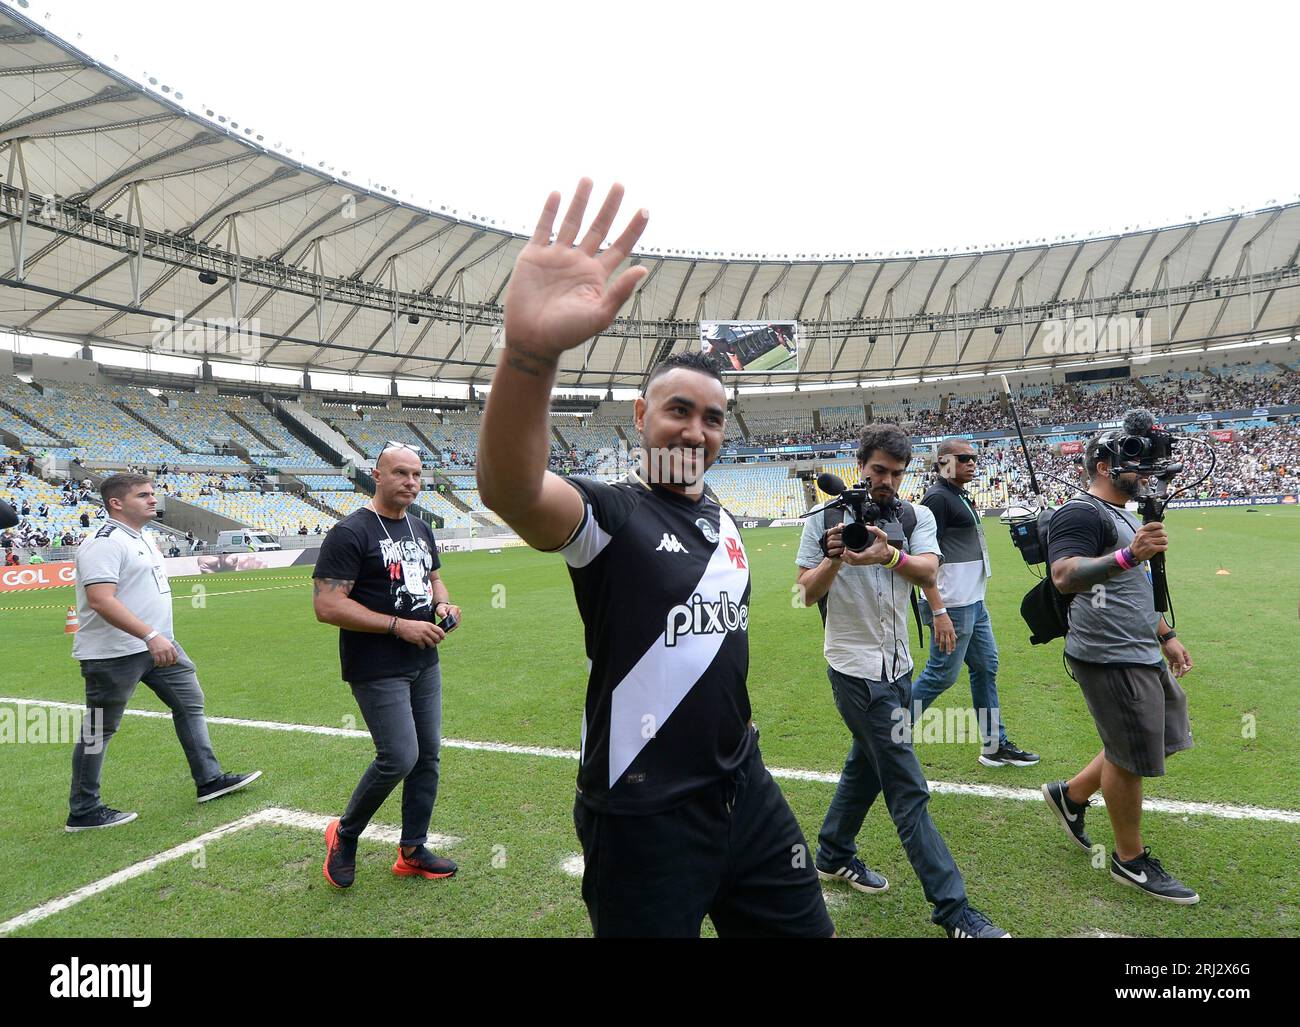 Le joueur du Stade Maracanã Dimitri Payet (FRA) est présenté comme le nouveau renfort de Vasco, quelques instants avant le match entre Vasco et Atletico Mineiro Banque D'Images